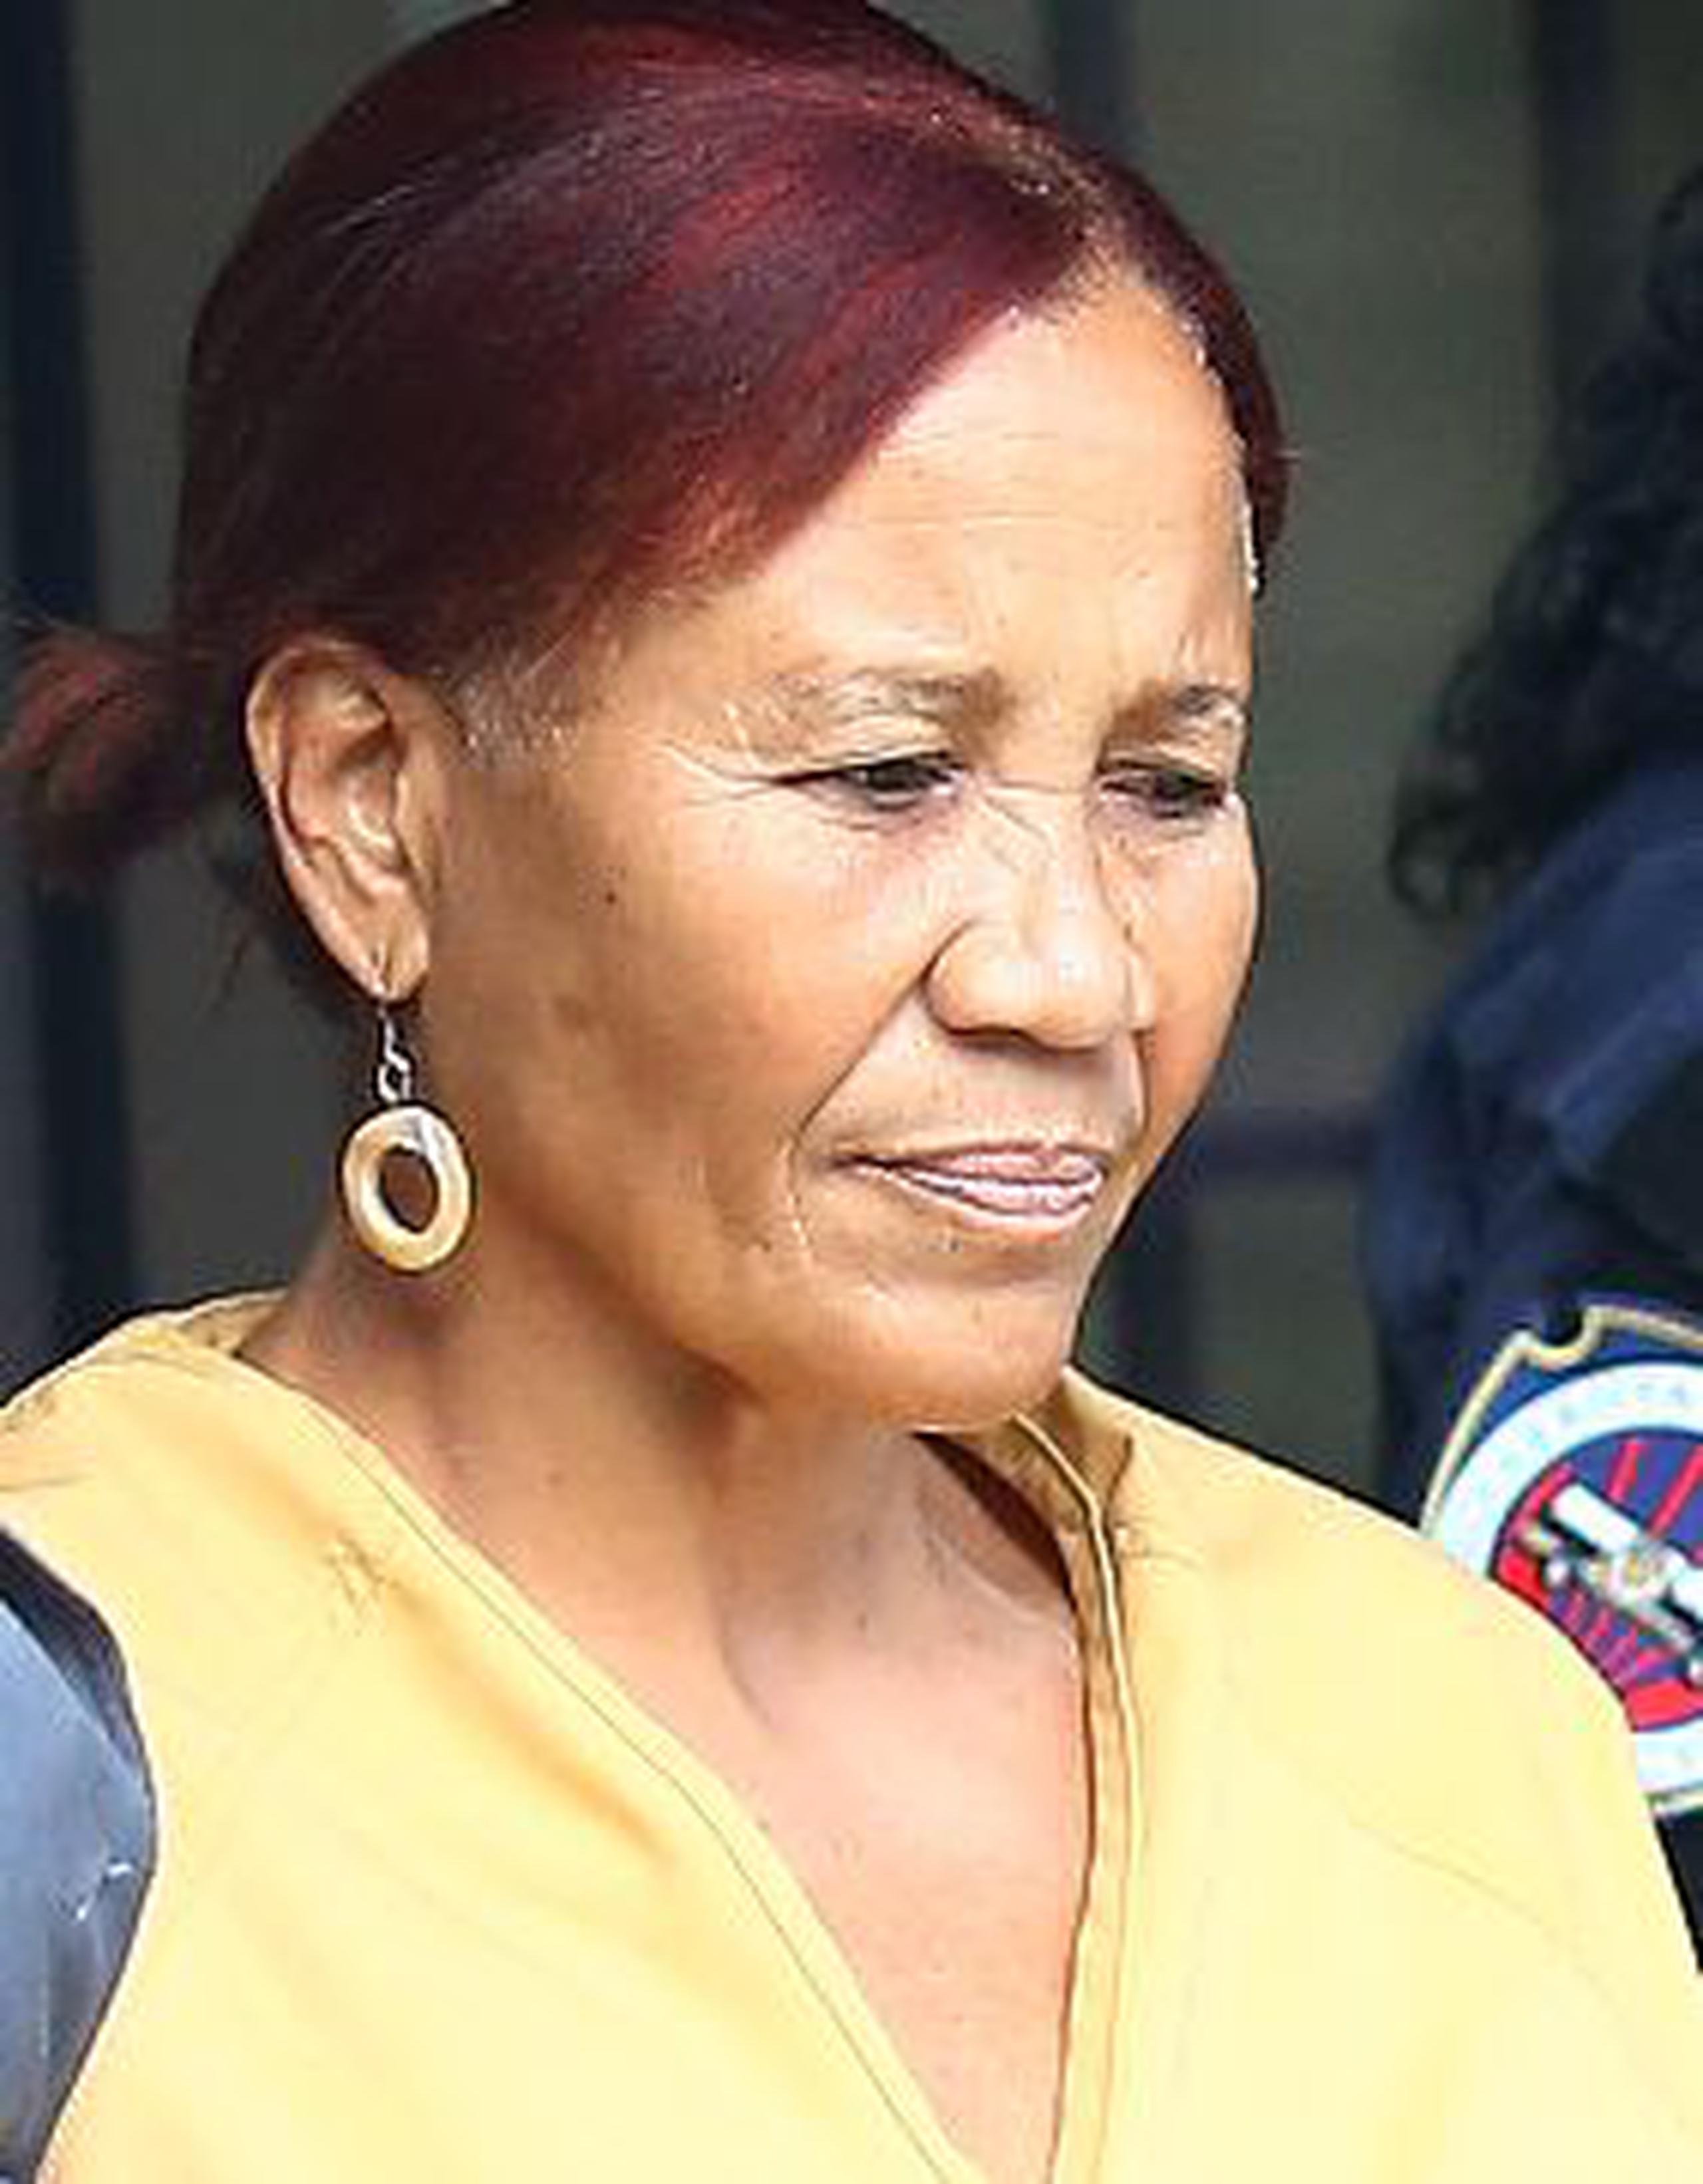 A un mes  de que acusaran a Aida de los Santos, el Departamento de Justicia aún no tiene planes inmediatos de encausar a otra persona. <font color="yellow">(Archivo)</font>